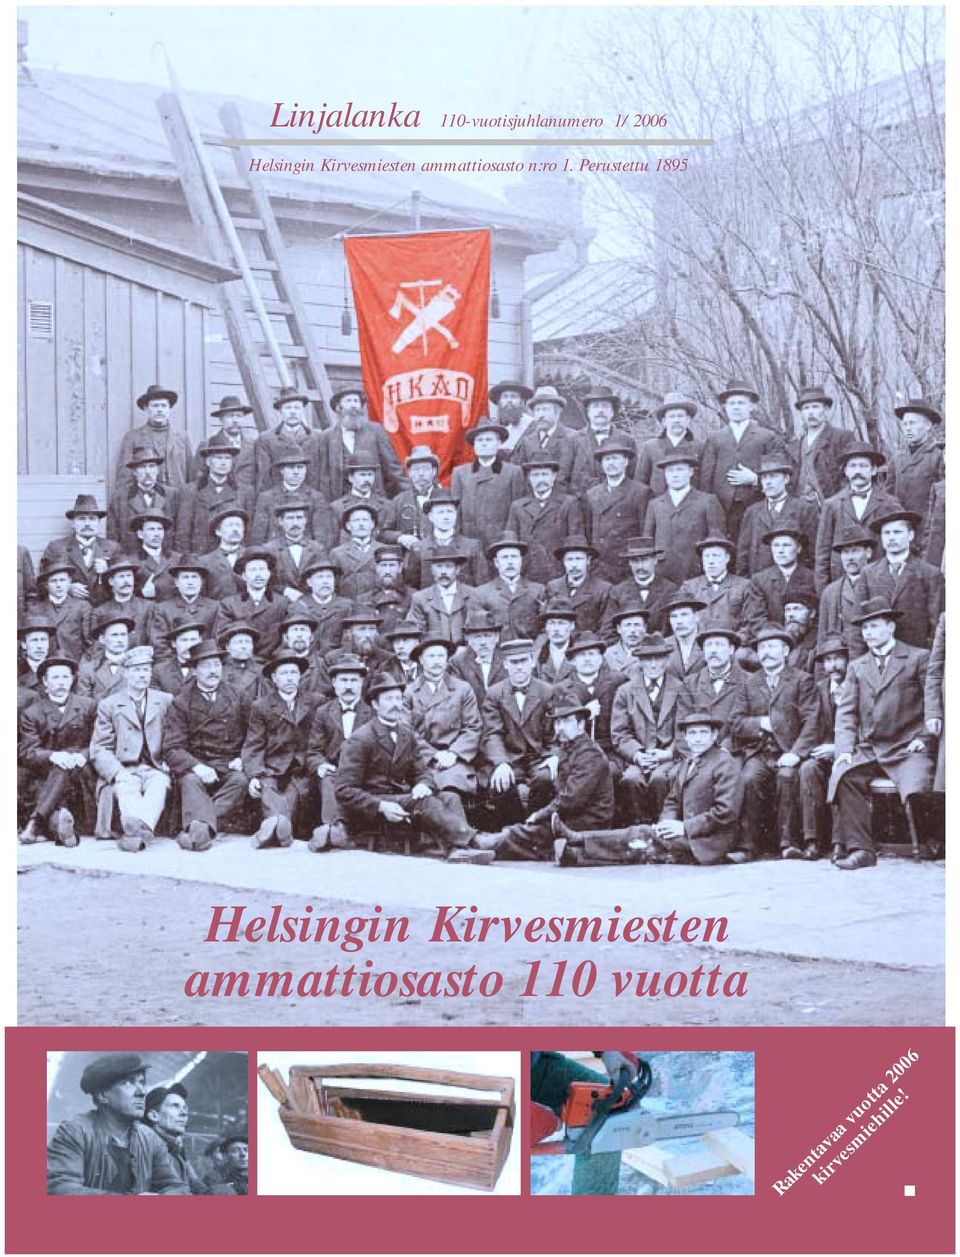 Perustettu 1895 Helsingin Kirvesmiesten